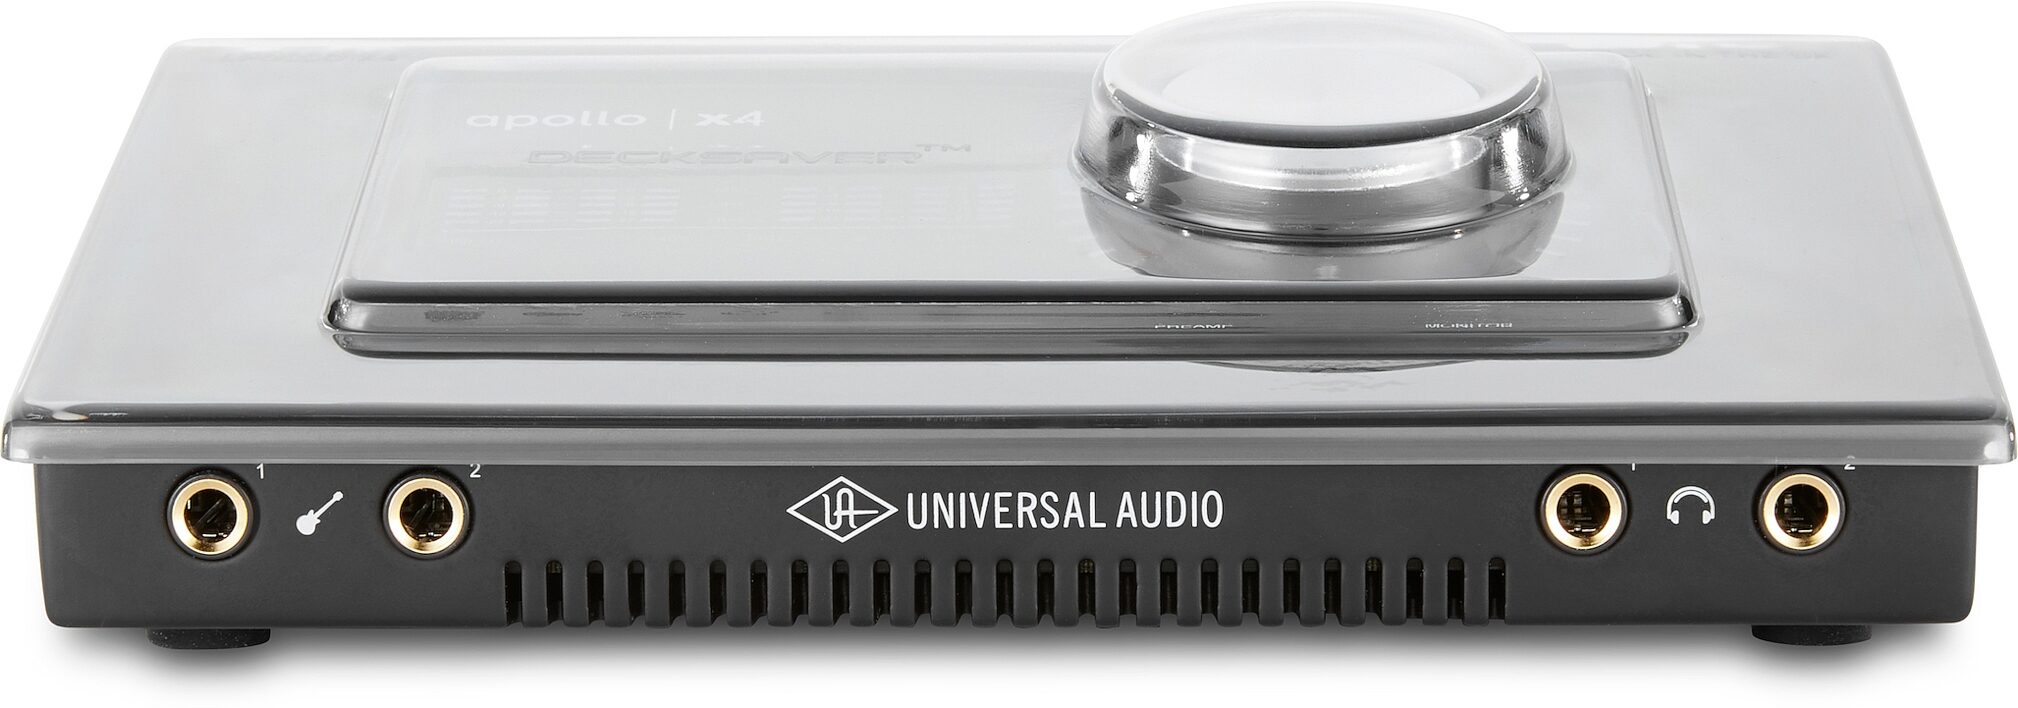 Decksaver Cover for Universal Audio Apollo X4 | zZounds